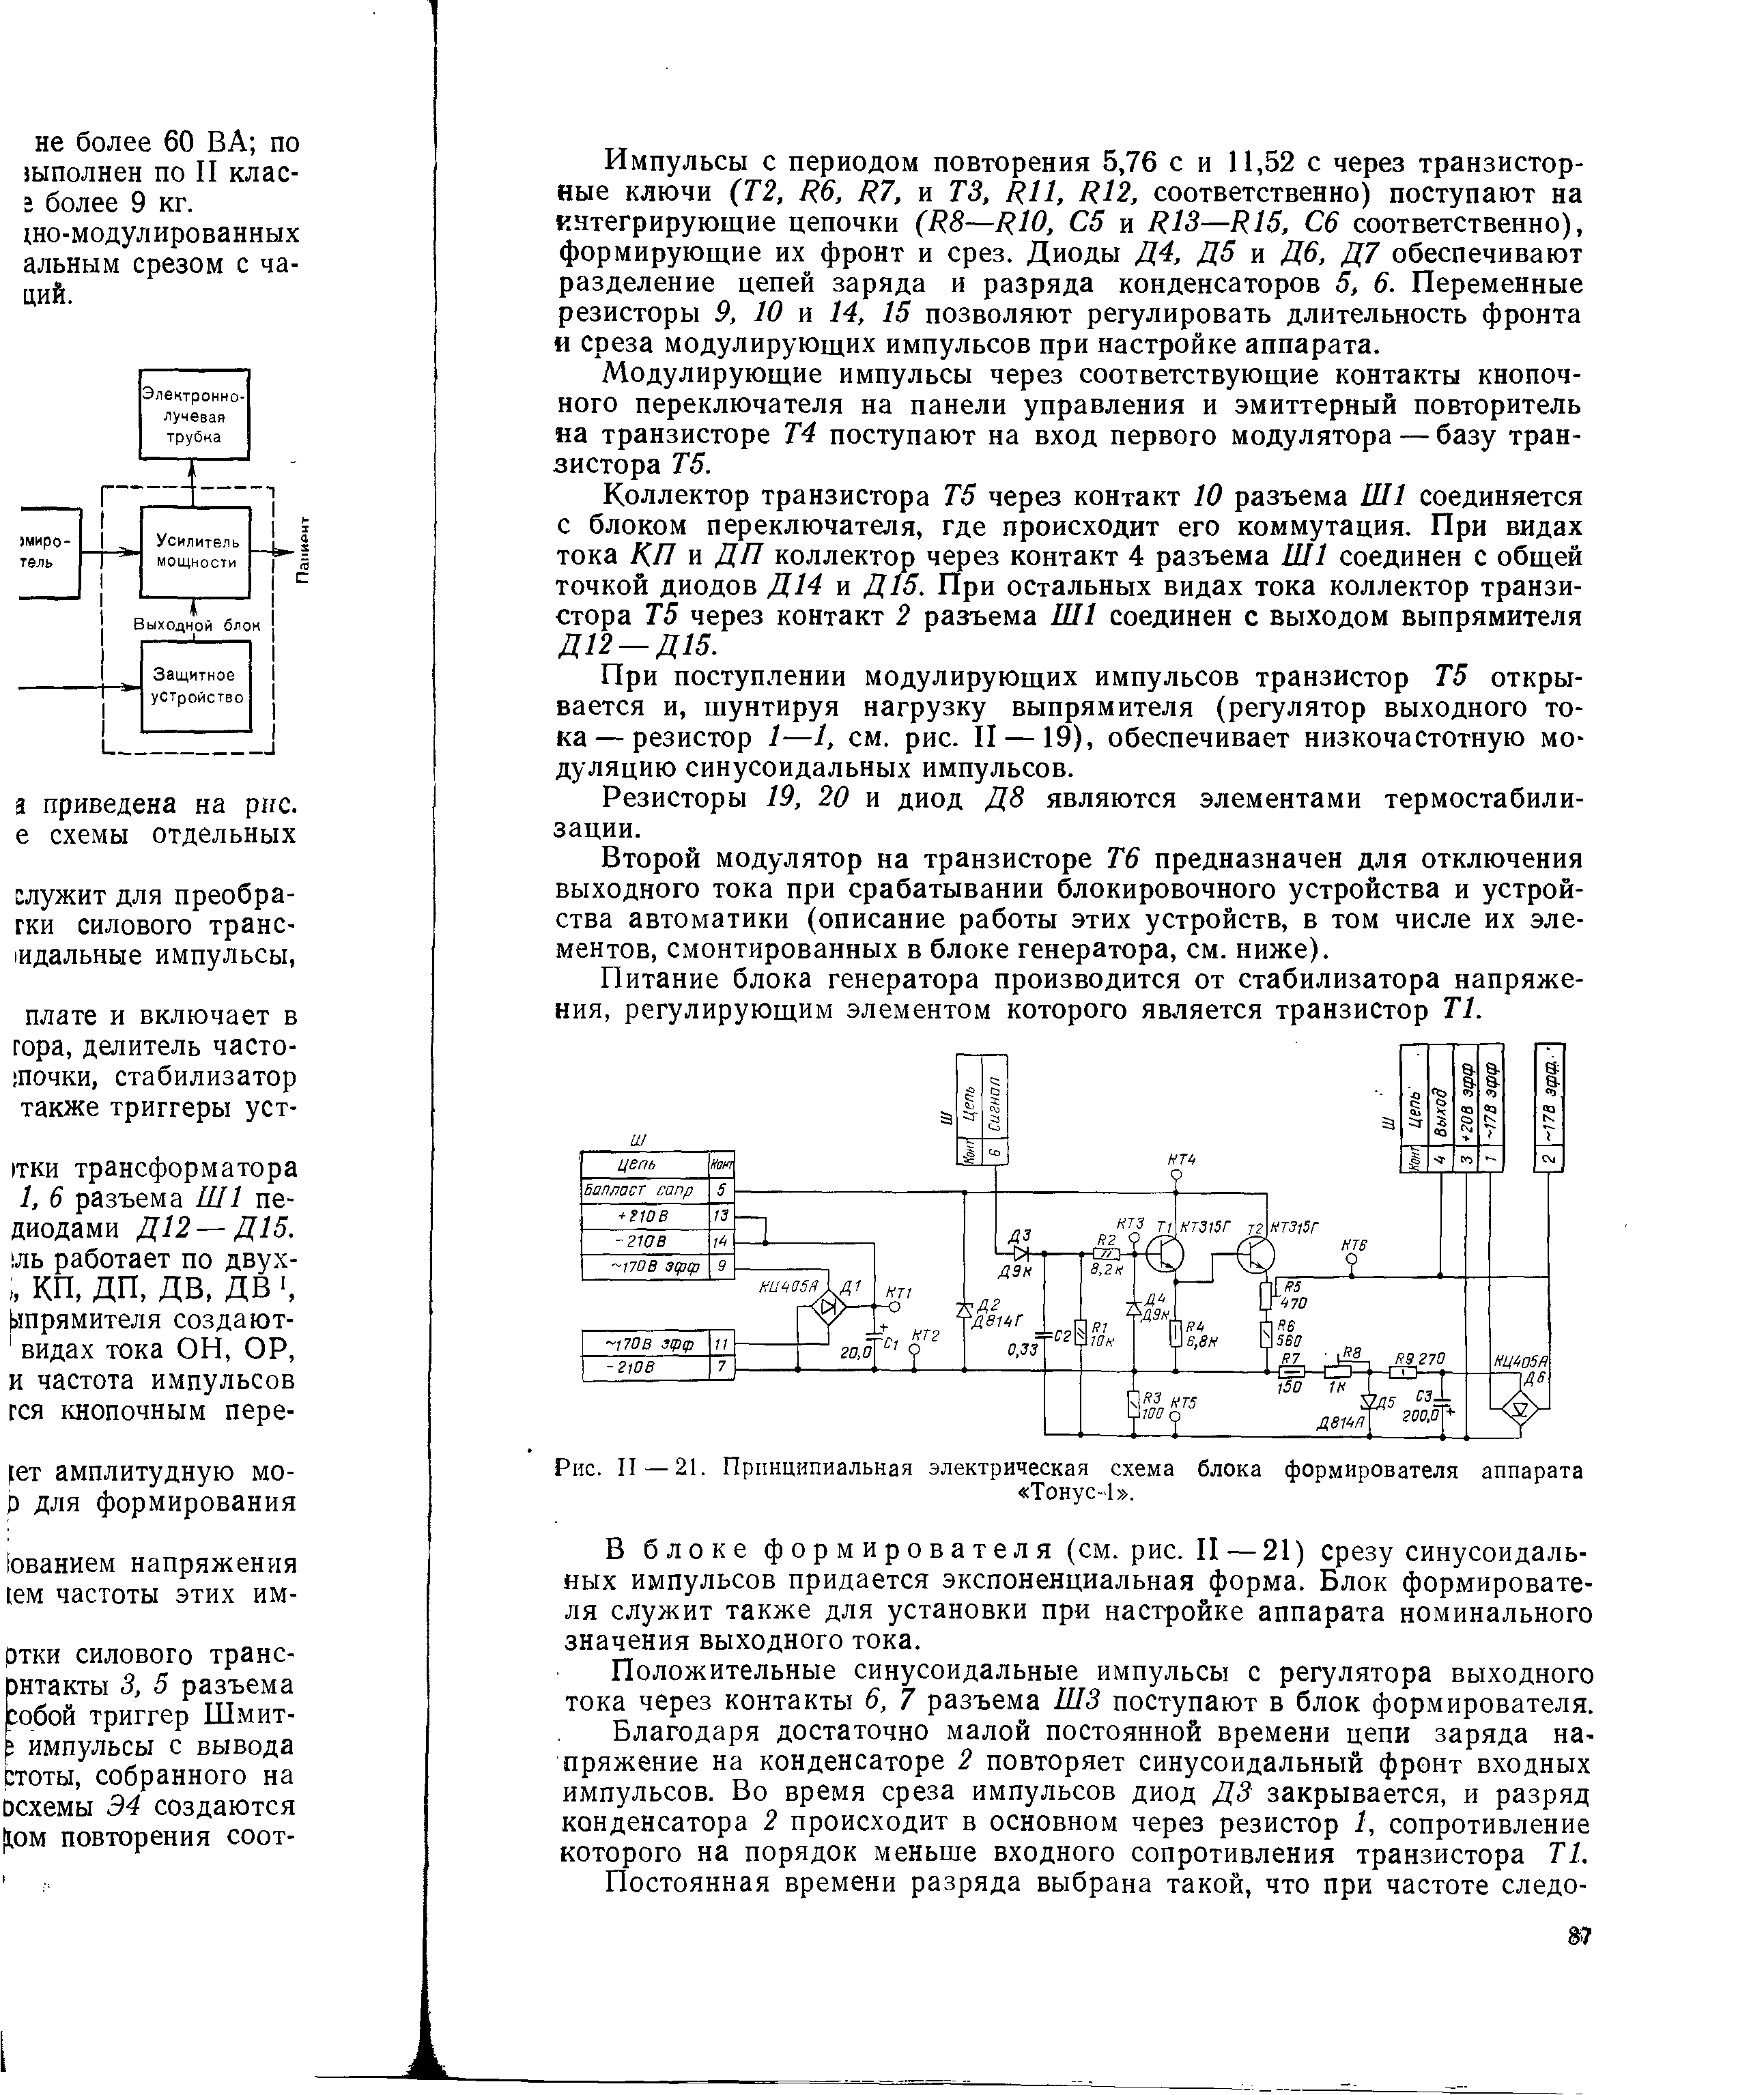 Рис. II — 21. Принципиальная электрическая схема блока формирователя аппарата Тонус-1 .